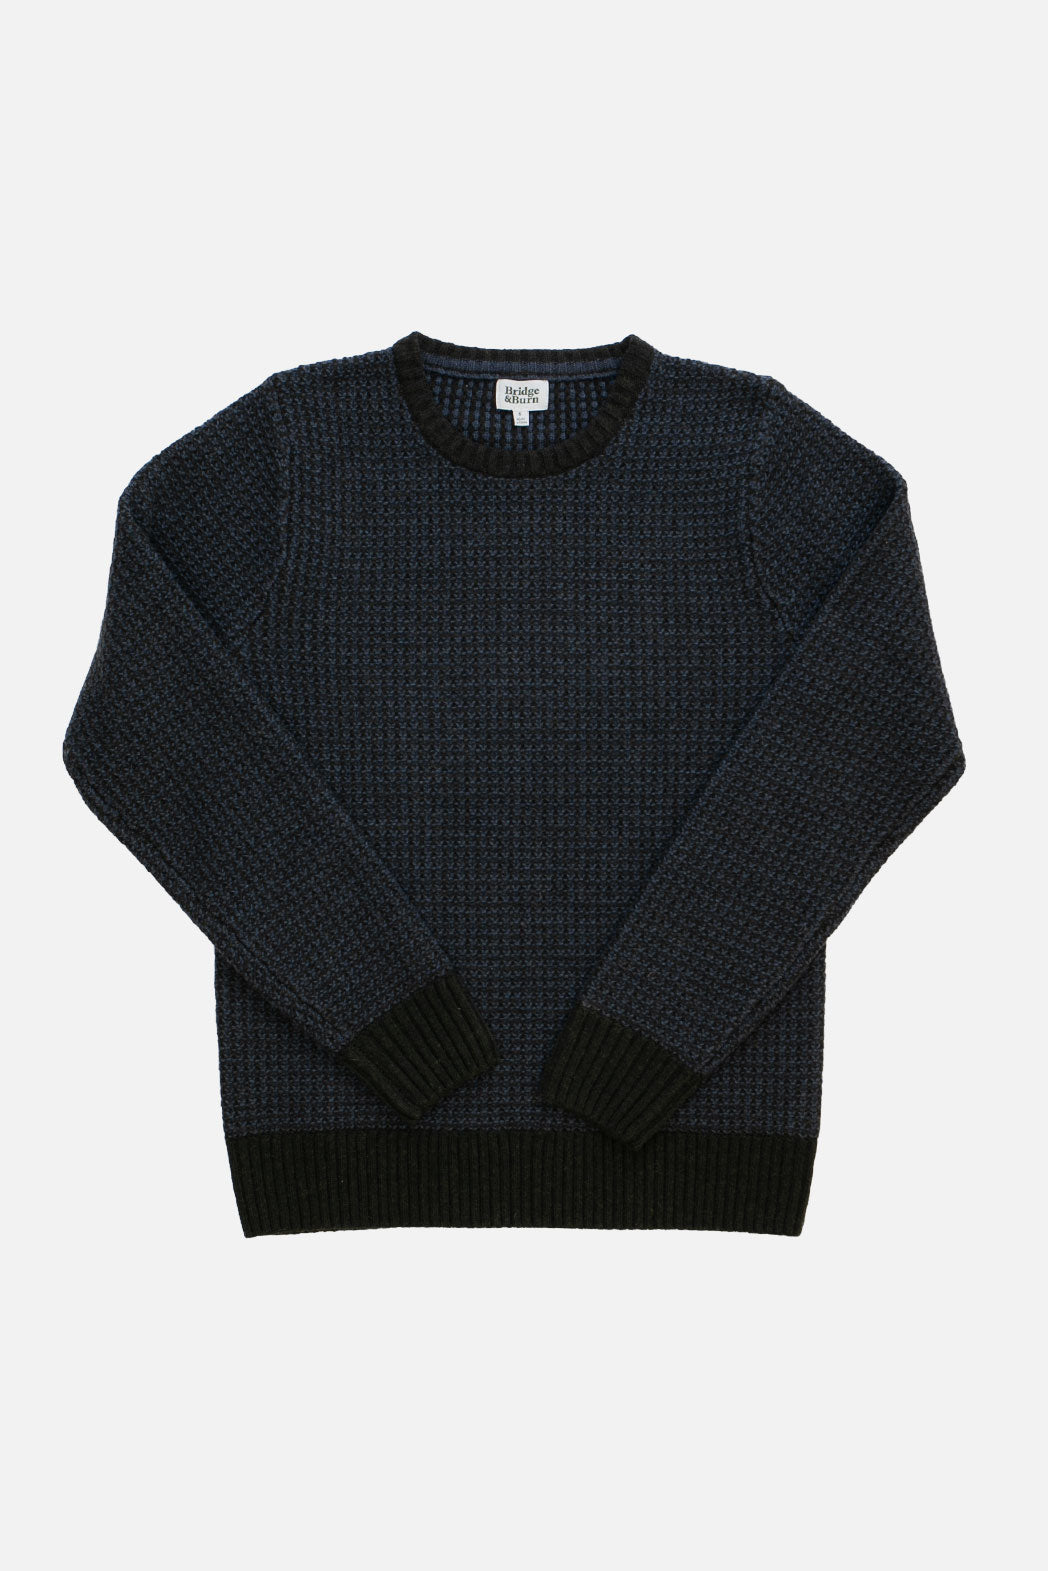 Chelan Sweater / Loden